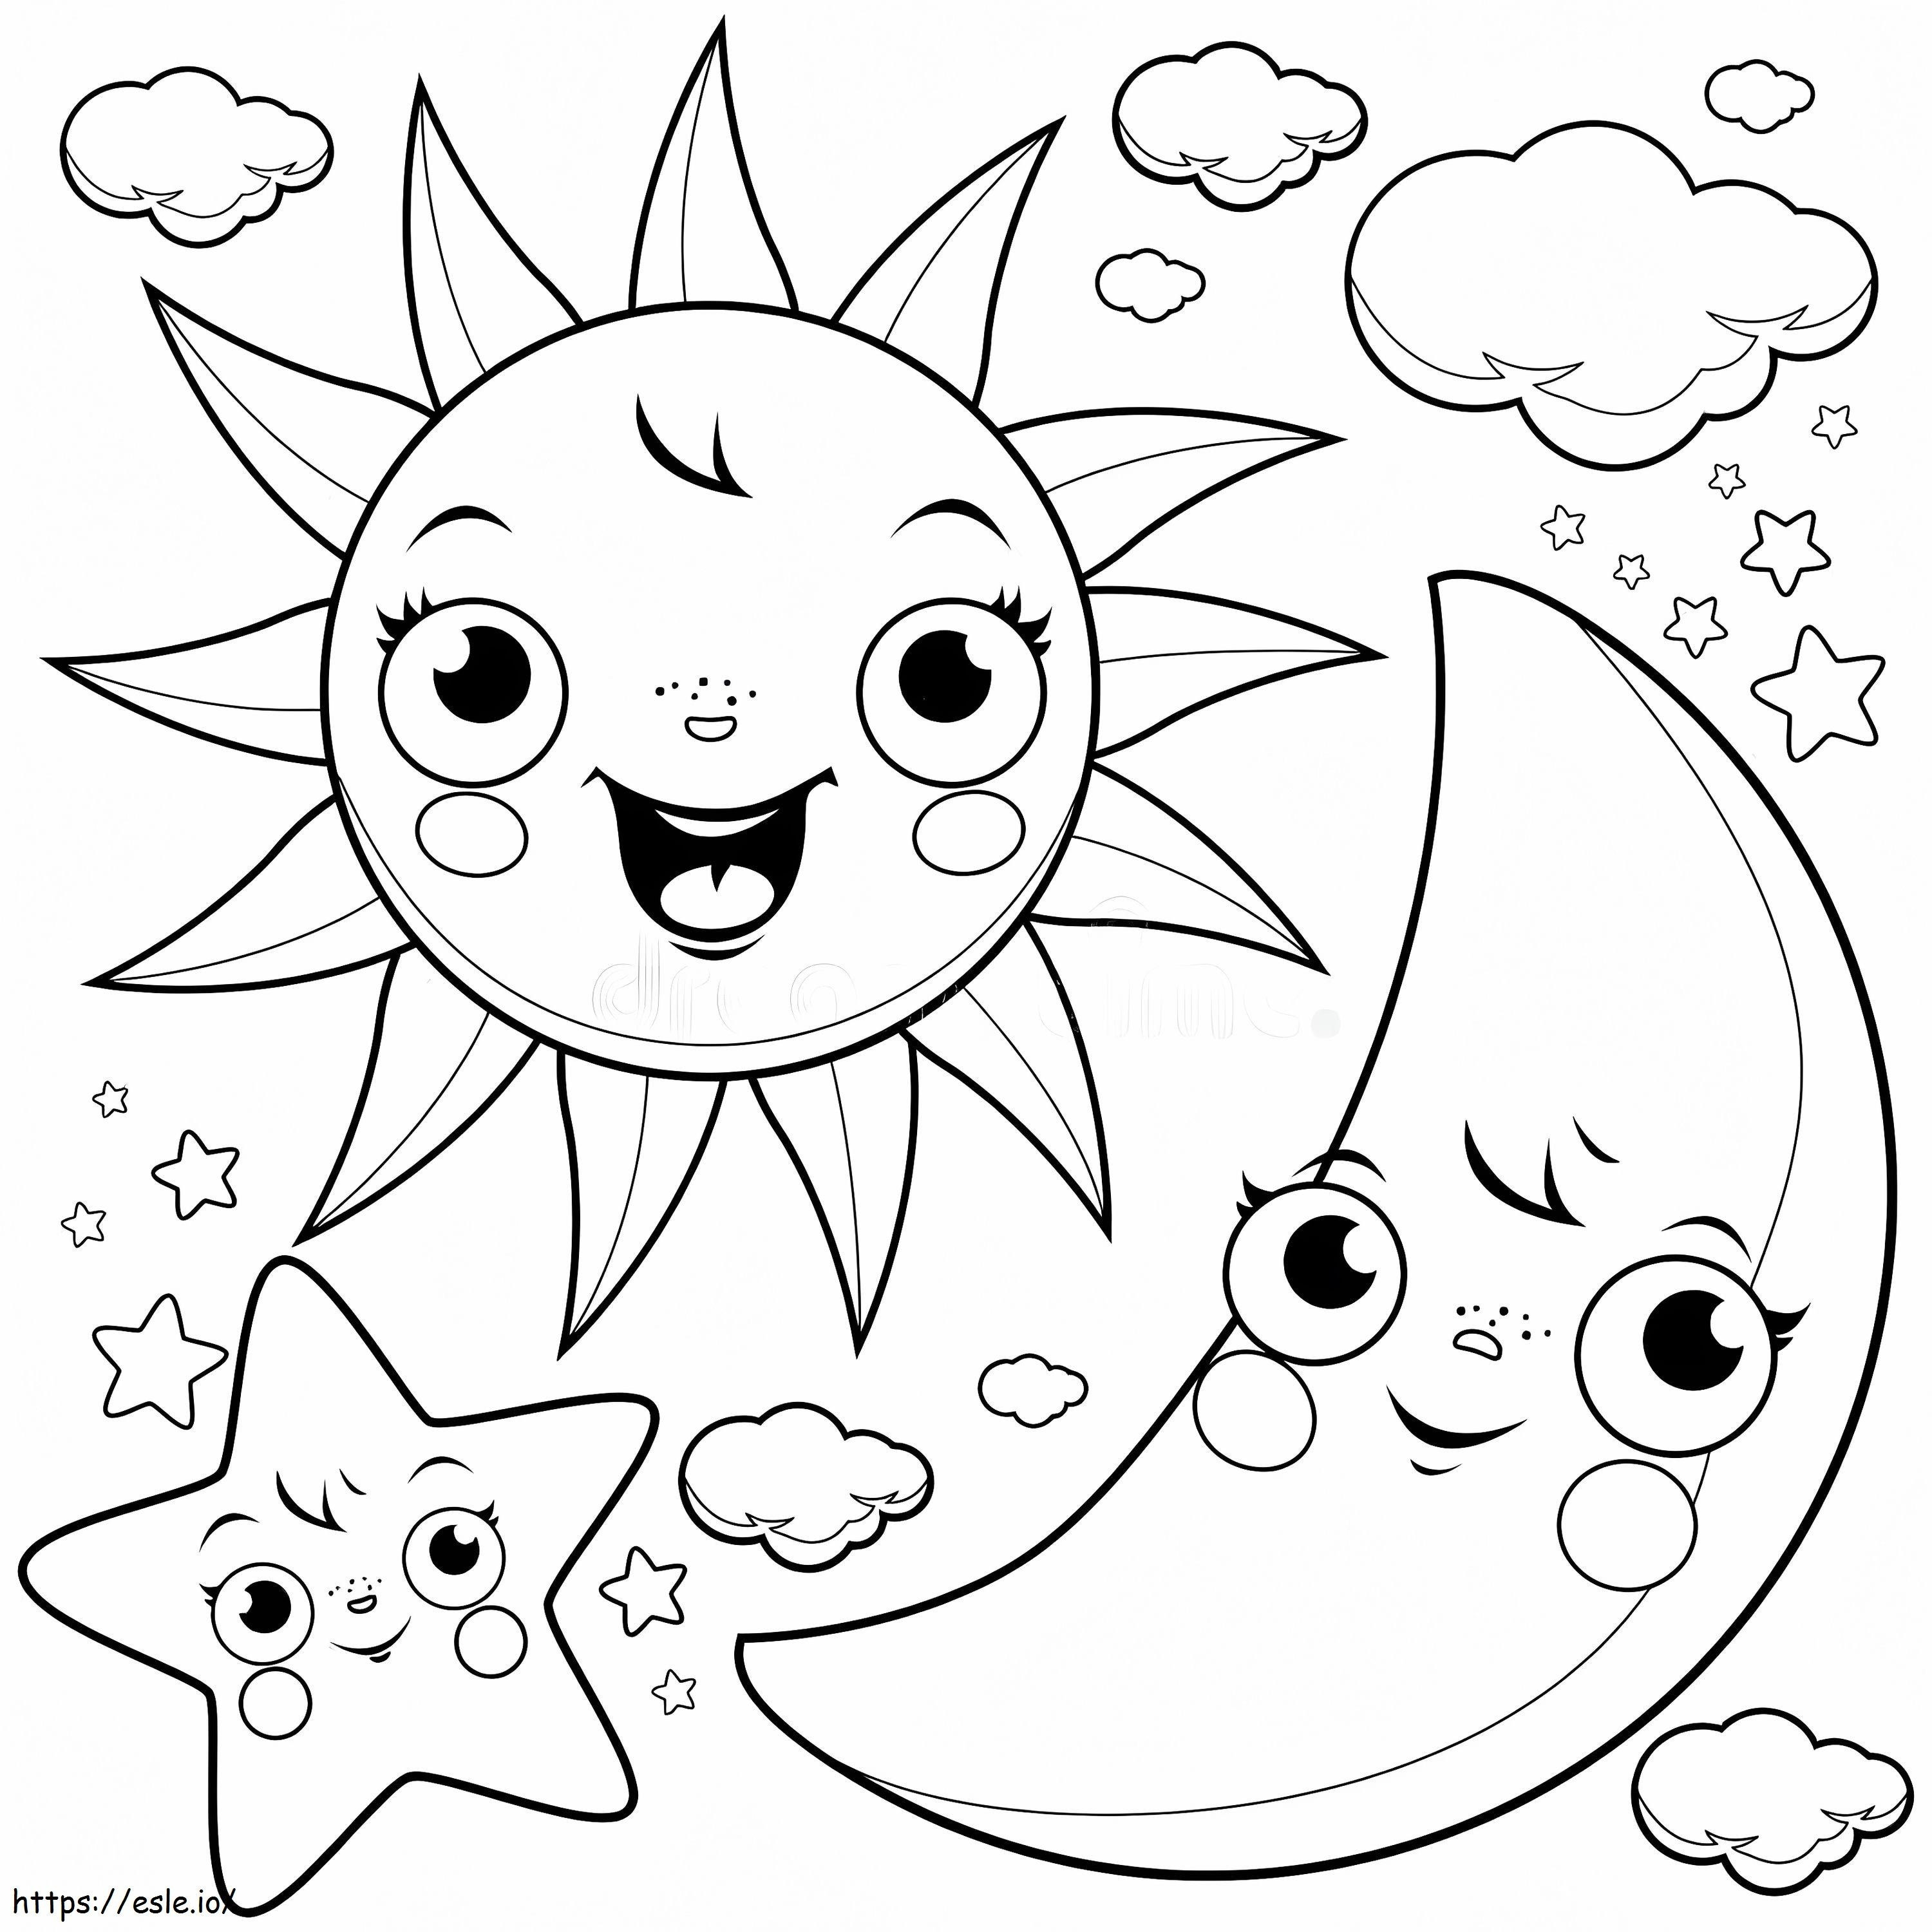 Cartoon-Sonne und Mond mit Sternen ausmalbilder